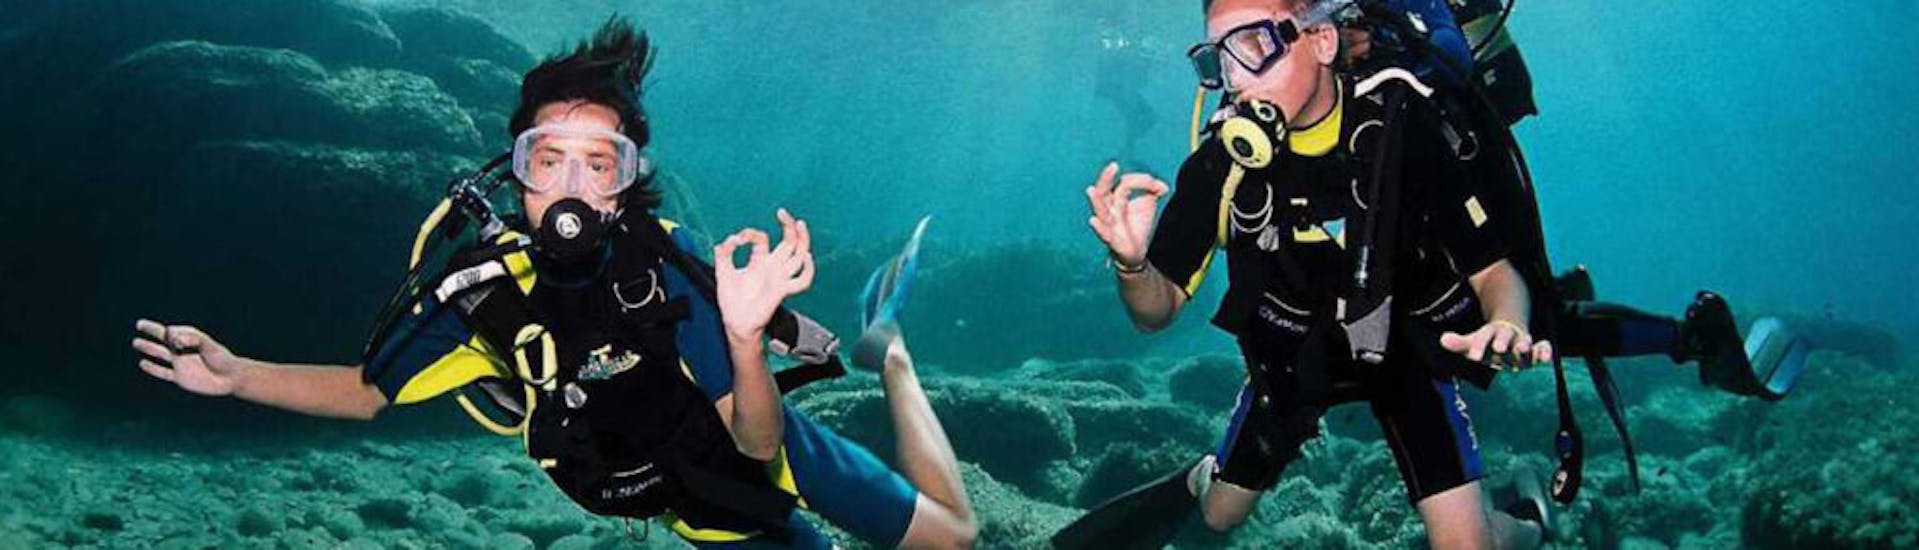 Photo de deux plongeurs faisant du langage des signes sous l'eau pendant la formation de plongée PADI Open Water à Ibiza par Arenal Diving & Boat Trips Ibiza.